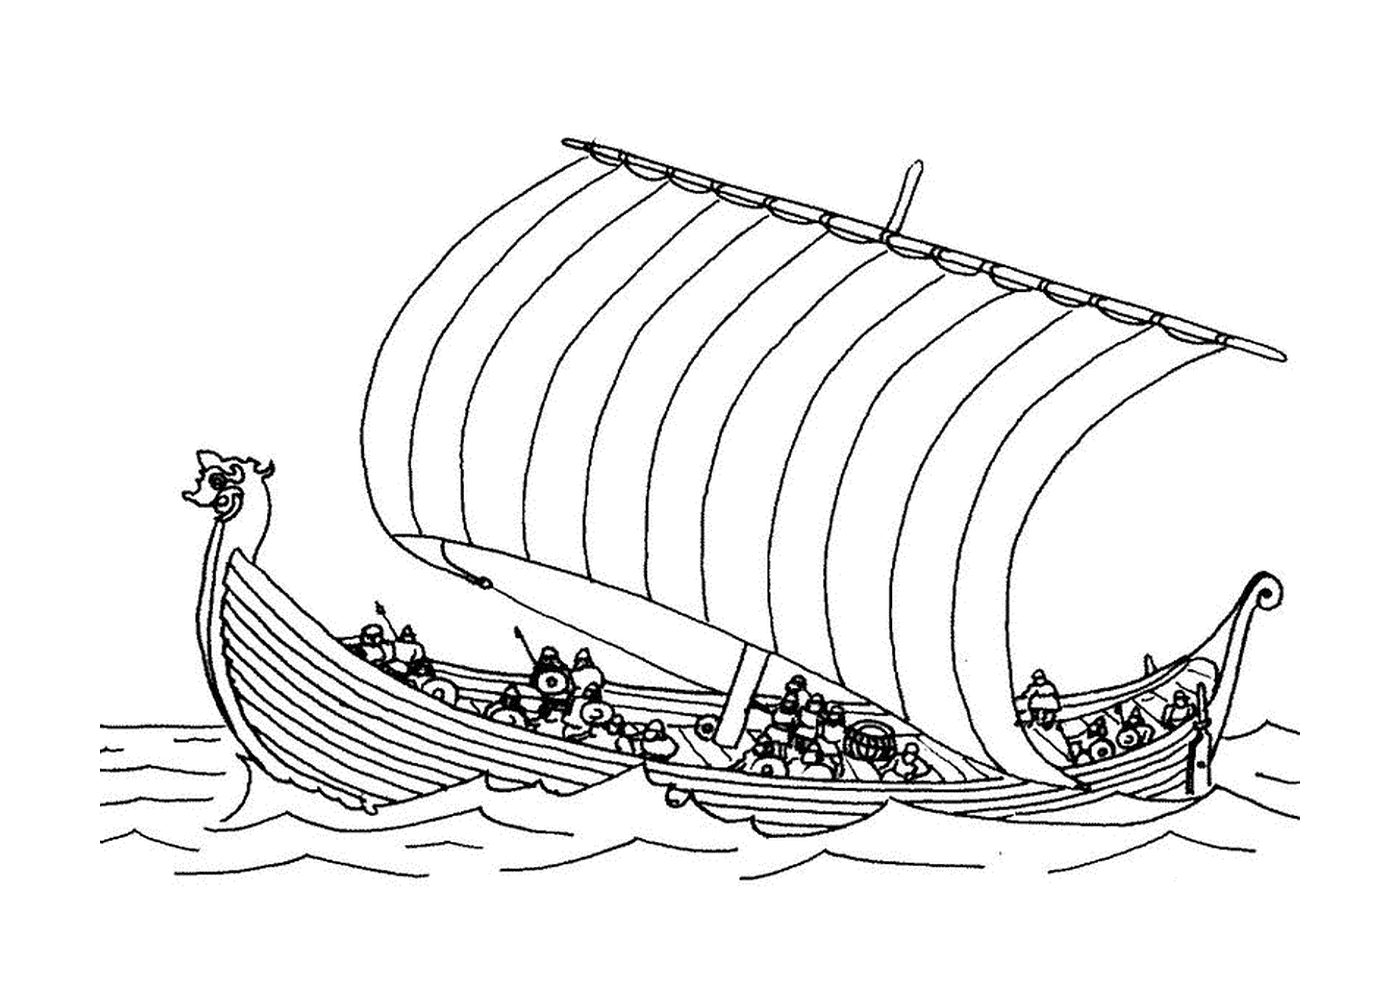  Una barca di drakkar sull'acqua 